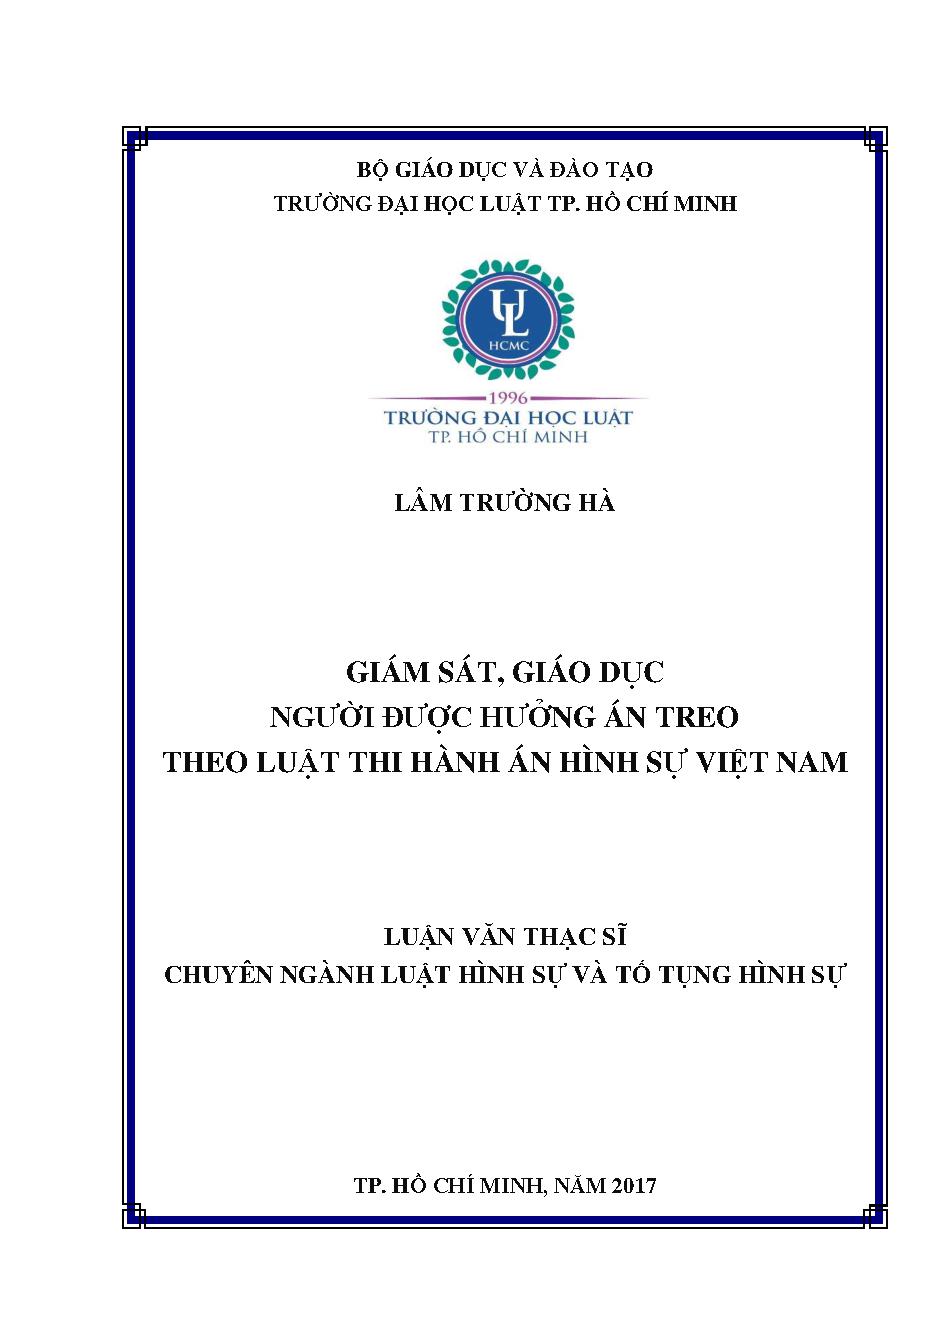 Giám sát, giáo dục người được hưởng án treo theo luật hình sự Việt Nam